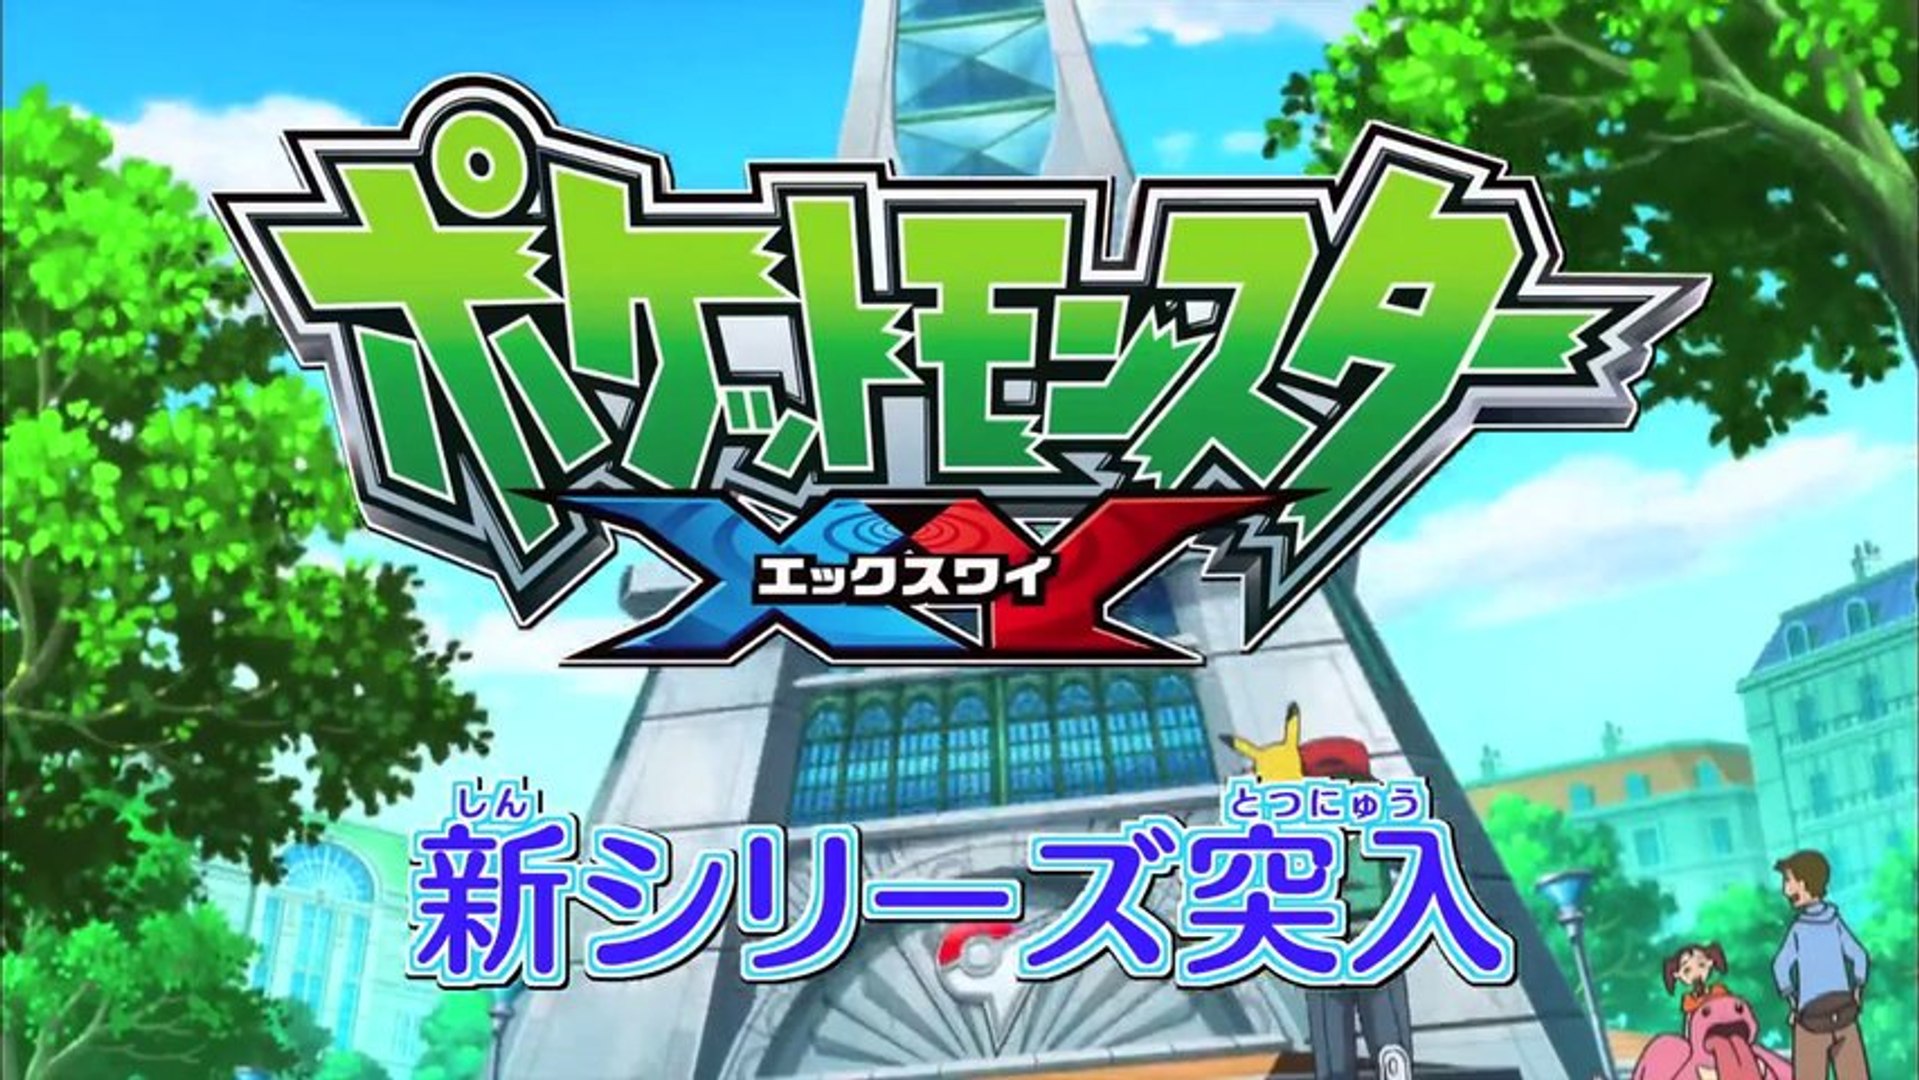 OPM Opina #8.2: Pokémon XY, a melhor série da franquia – Otaku Pós-Moderno